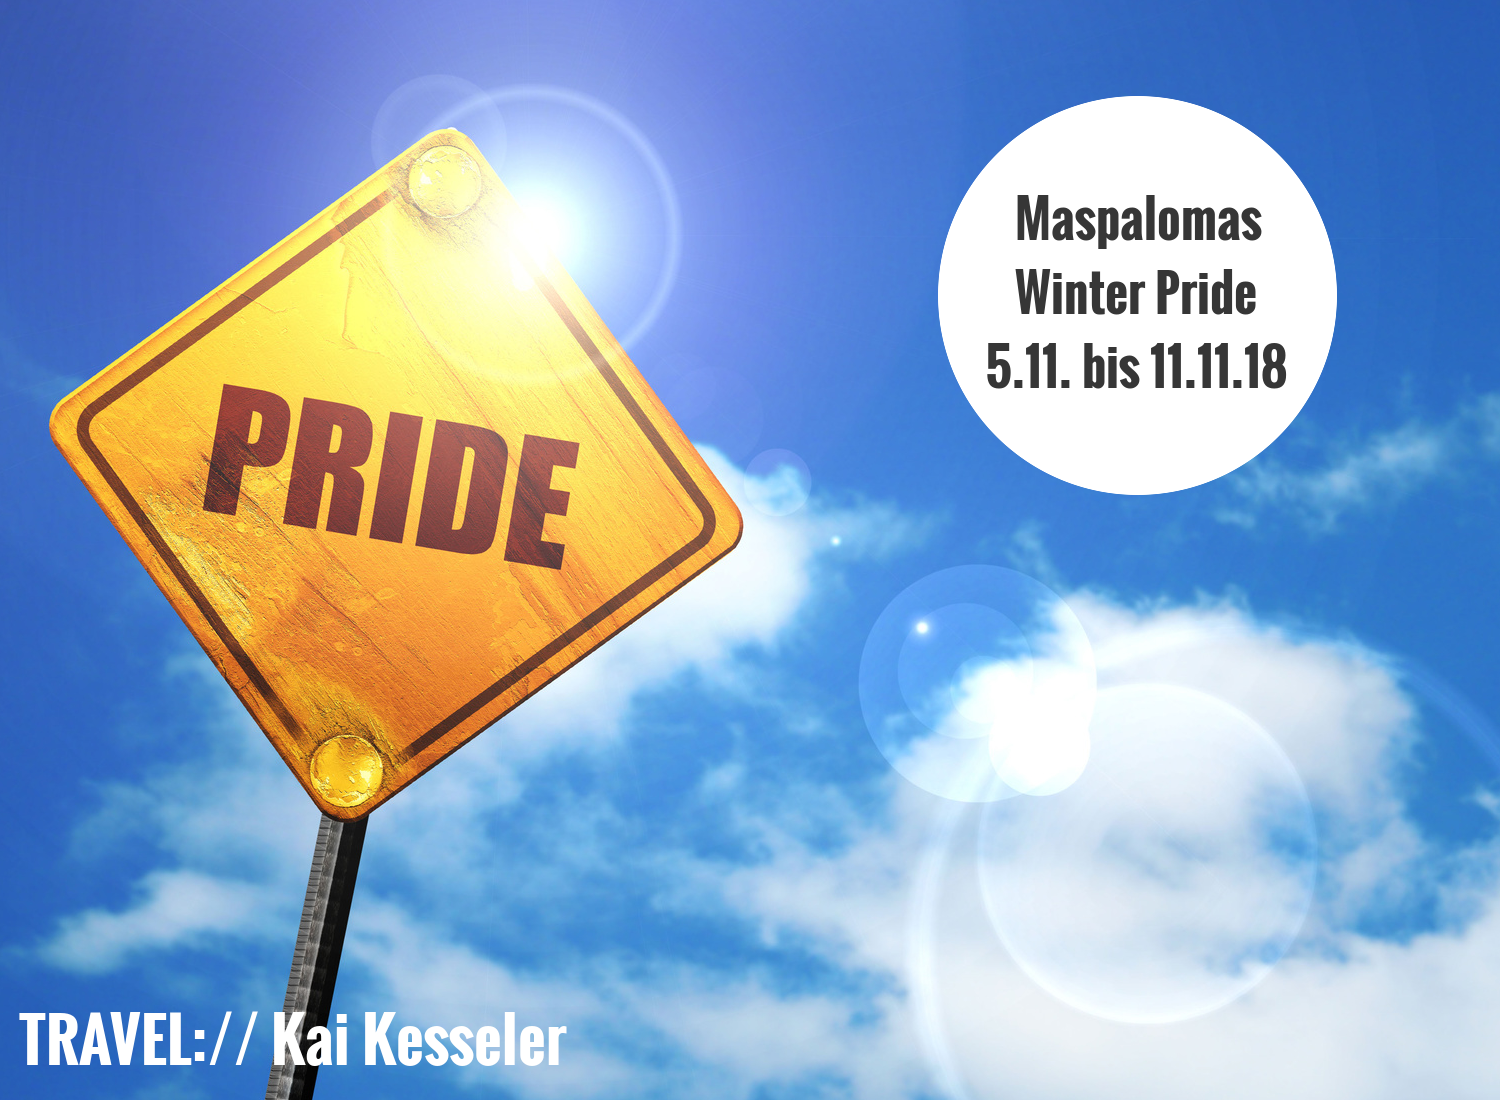 Maspalomas Winter Pride 2018